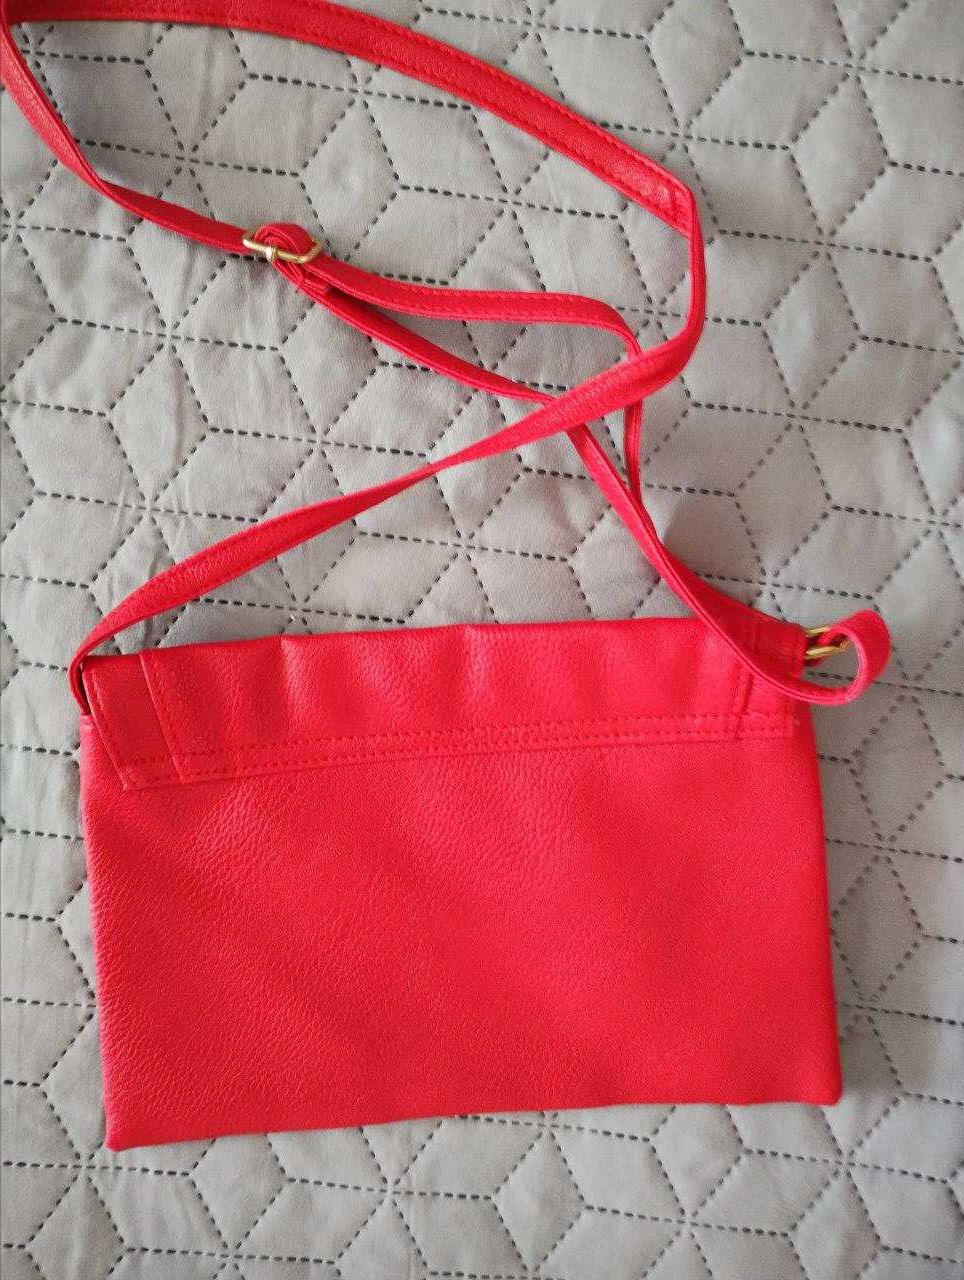 Малки дамски чанти - бяла и червена - нови